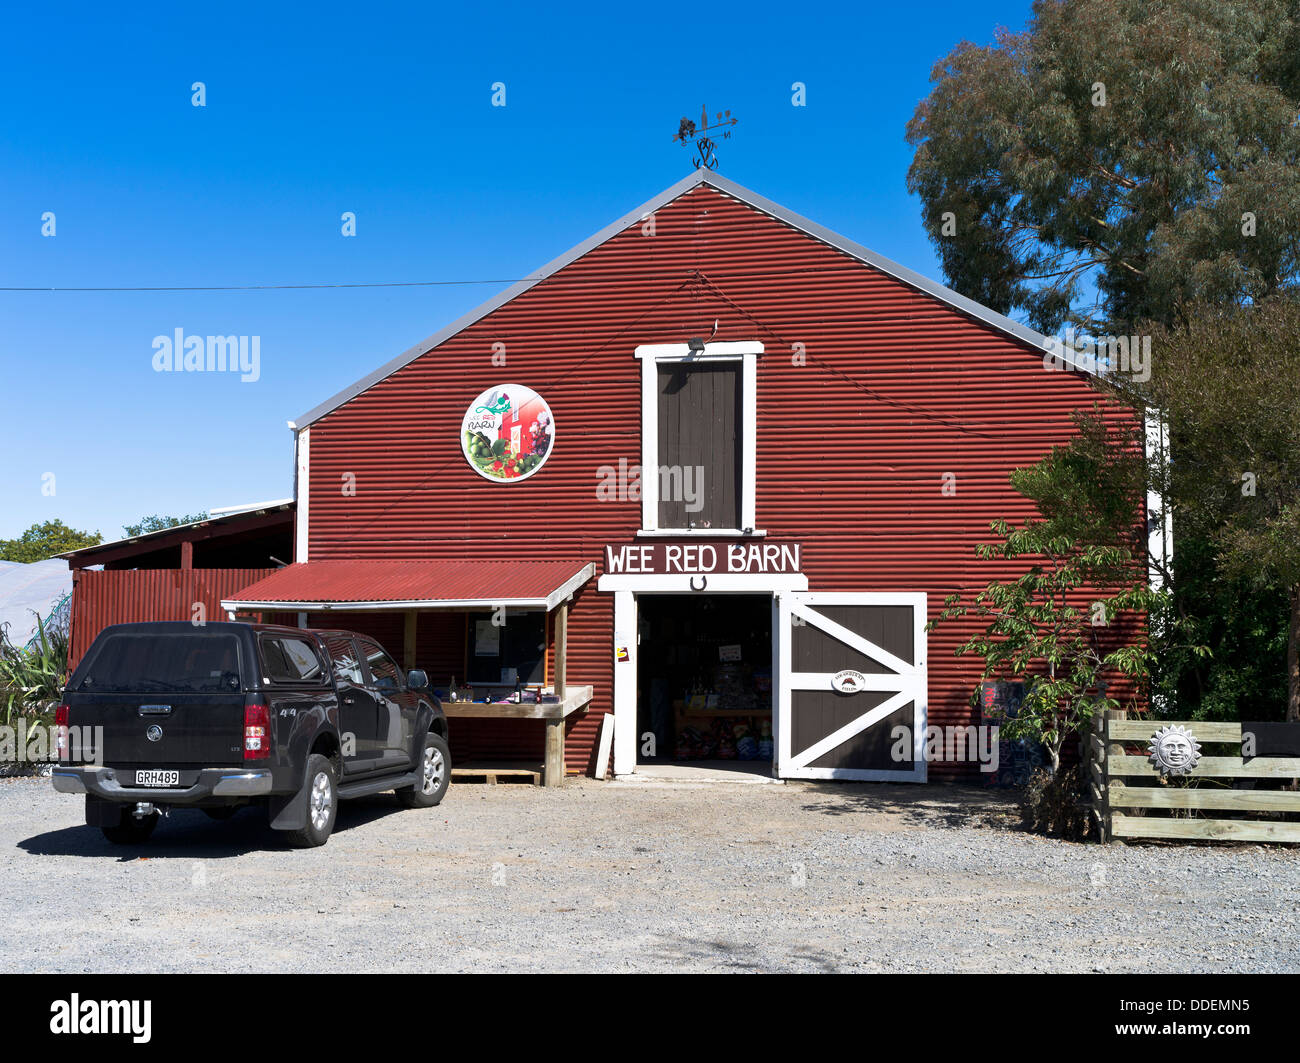 Dh NEUSEELAND WAIRARAPA Wairarapa Valley Farm Stände am Straßenrand Wee Red Barn shop ländlichen Stockfoto